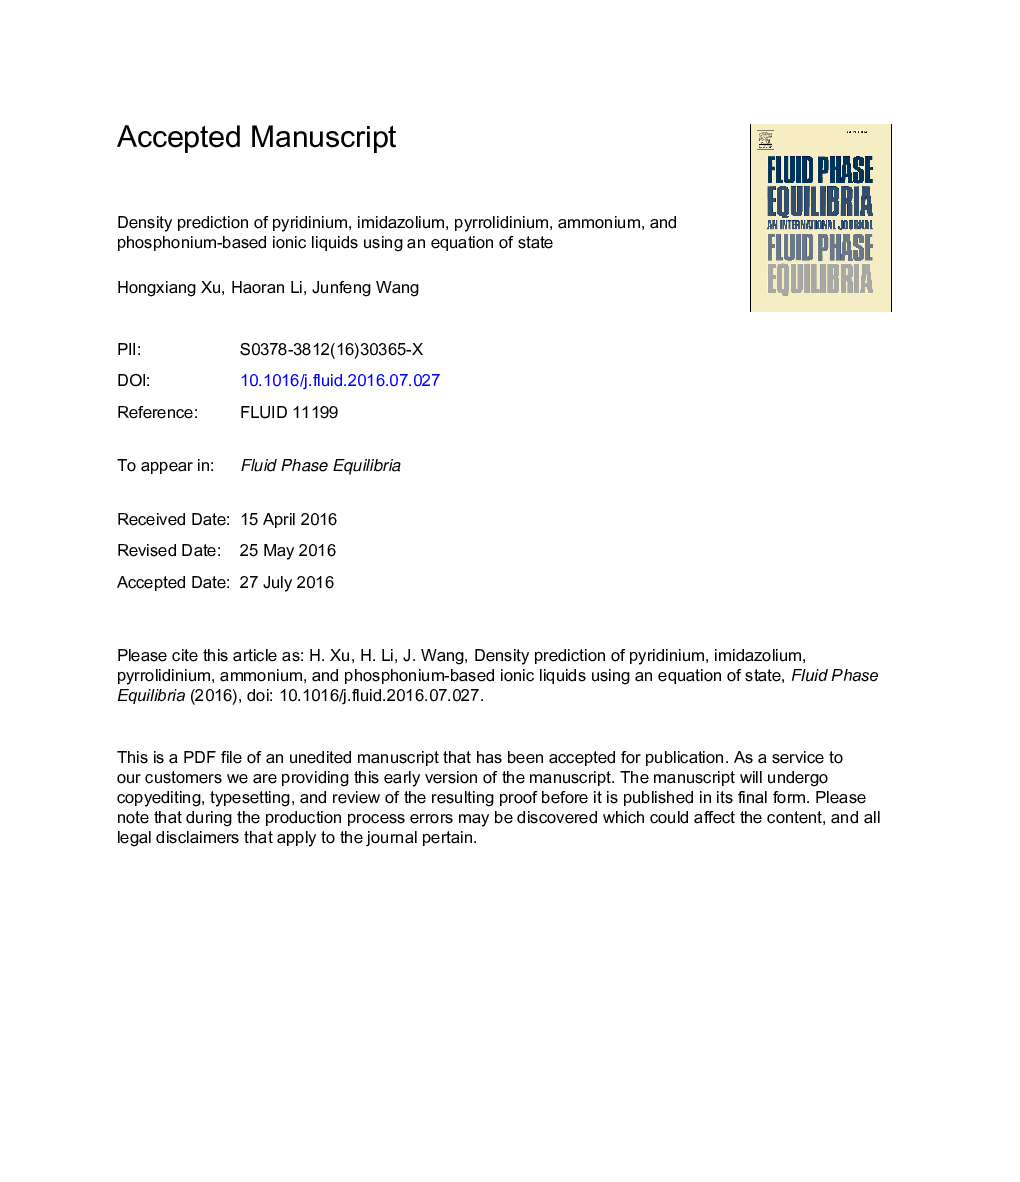 Density prediction of pyridinium, imidazolium, pyrrolidinium, ammonium, and phosphonium-based ionic liquids using an equation of state